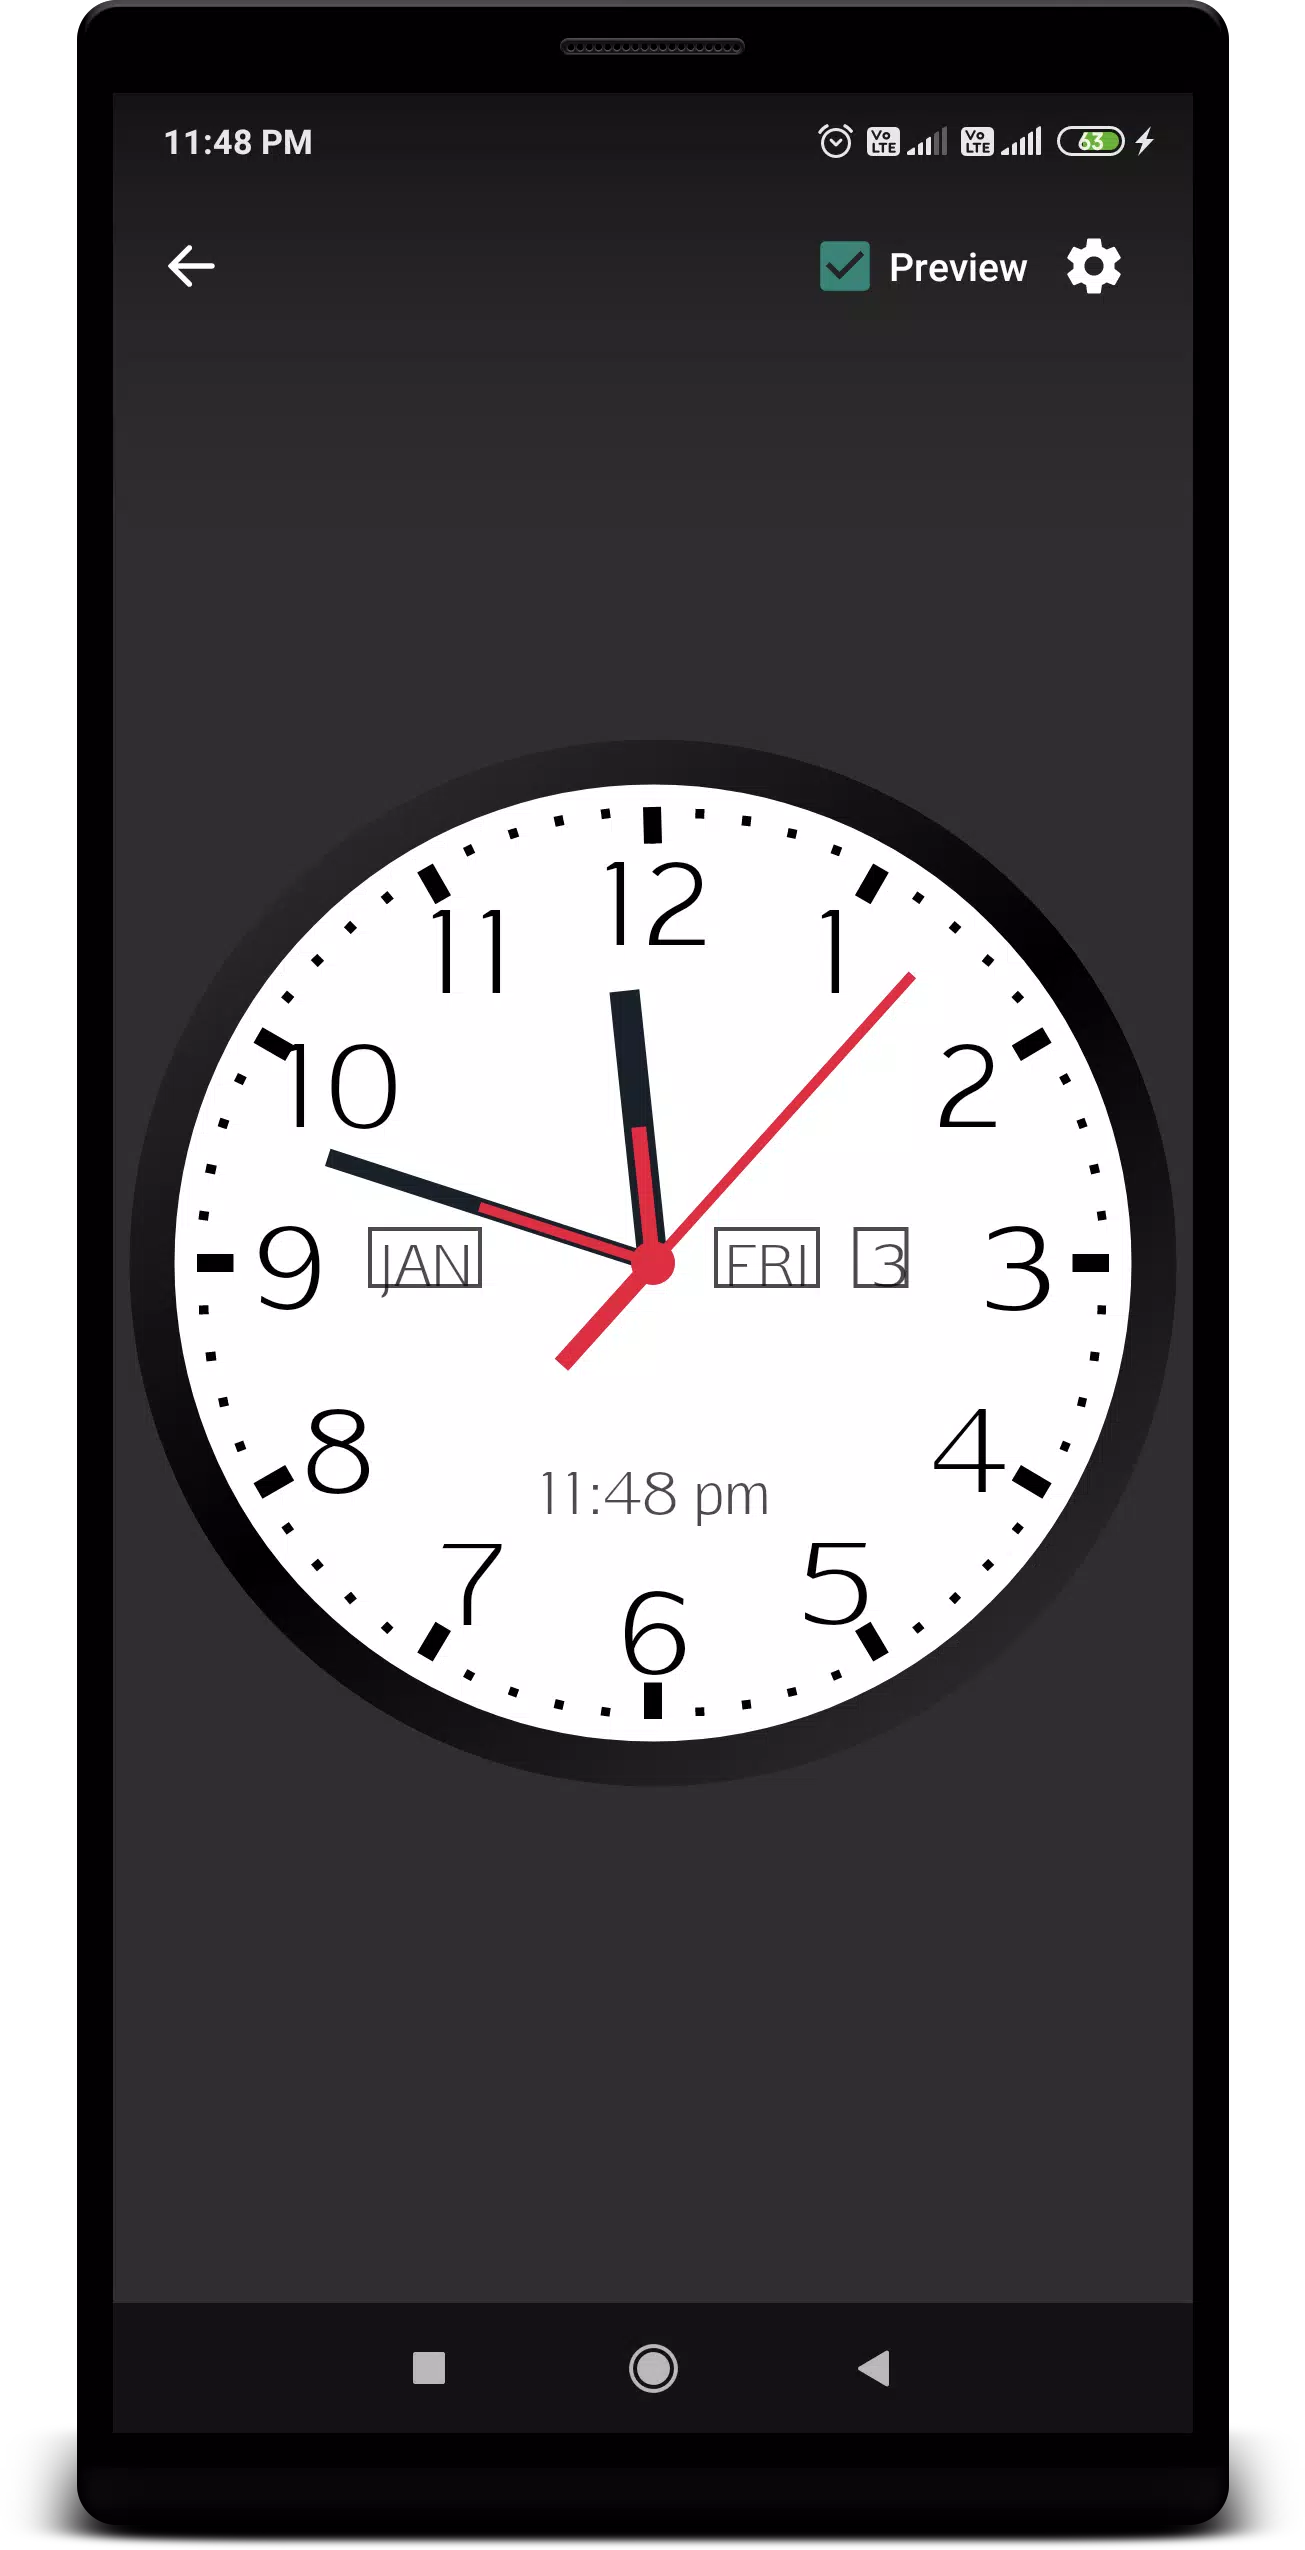 Аналоговые часы для андроид 4.2.2. Аналоговые часы для андроид. Аналоговые часы на экран. Вертикальные часы для андроид. Установить аналоговые часы